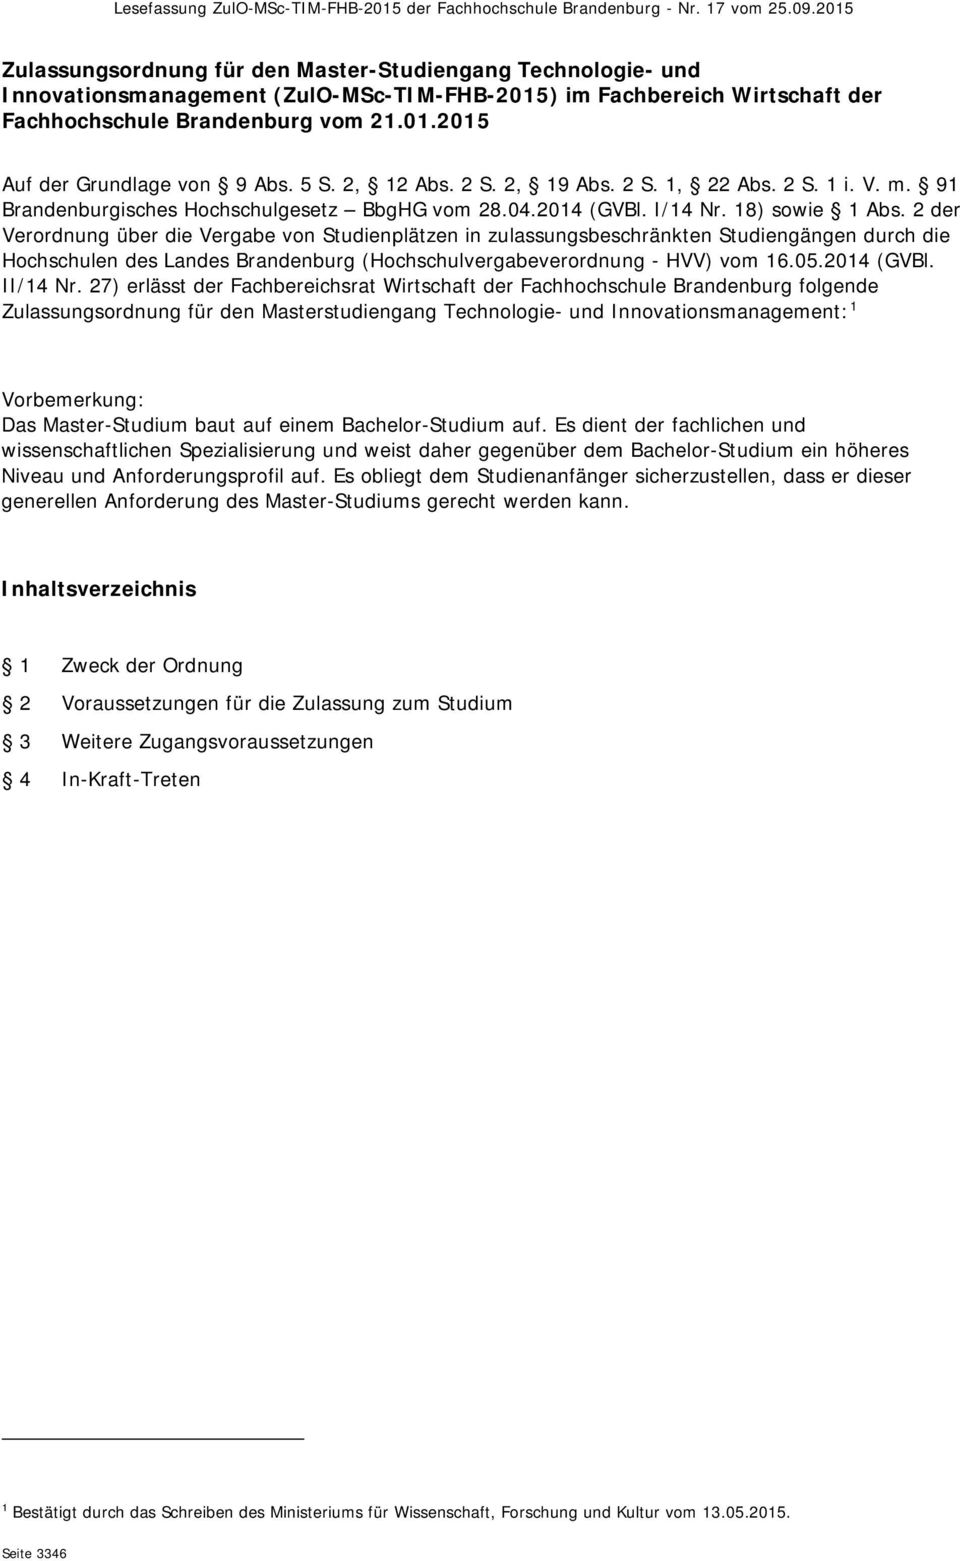 5 S. 2, 12 Abs. 2 S. 2, 19 Abs. 2 S. 1, 22 Abs. 2 S. 1 i. V. m. 91 Brandenburgisches Hochschulgesetz BbgHG vom 28.04.2014 (GVBl. I/14 Nr. 18) sowie 1 Abs.